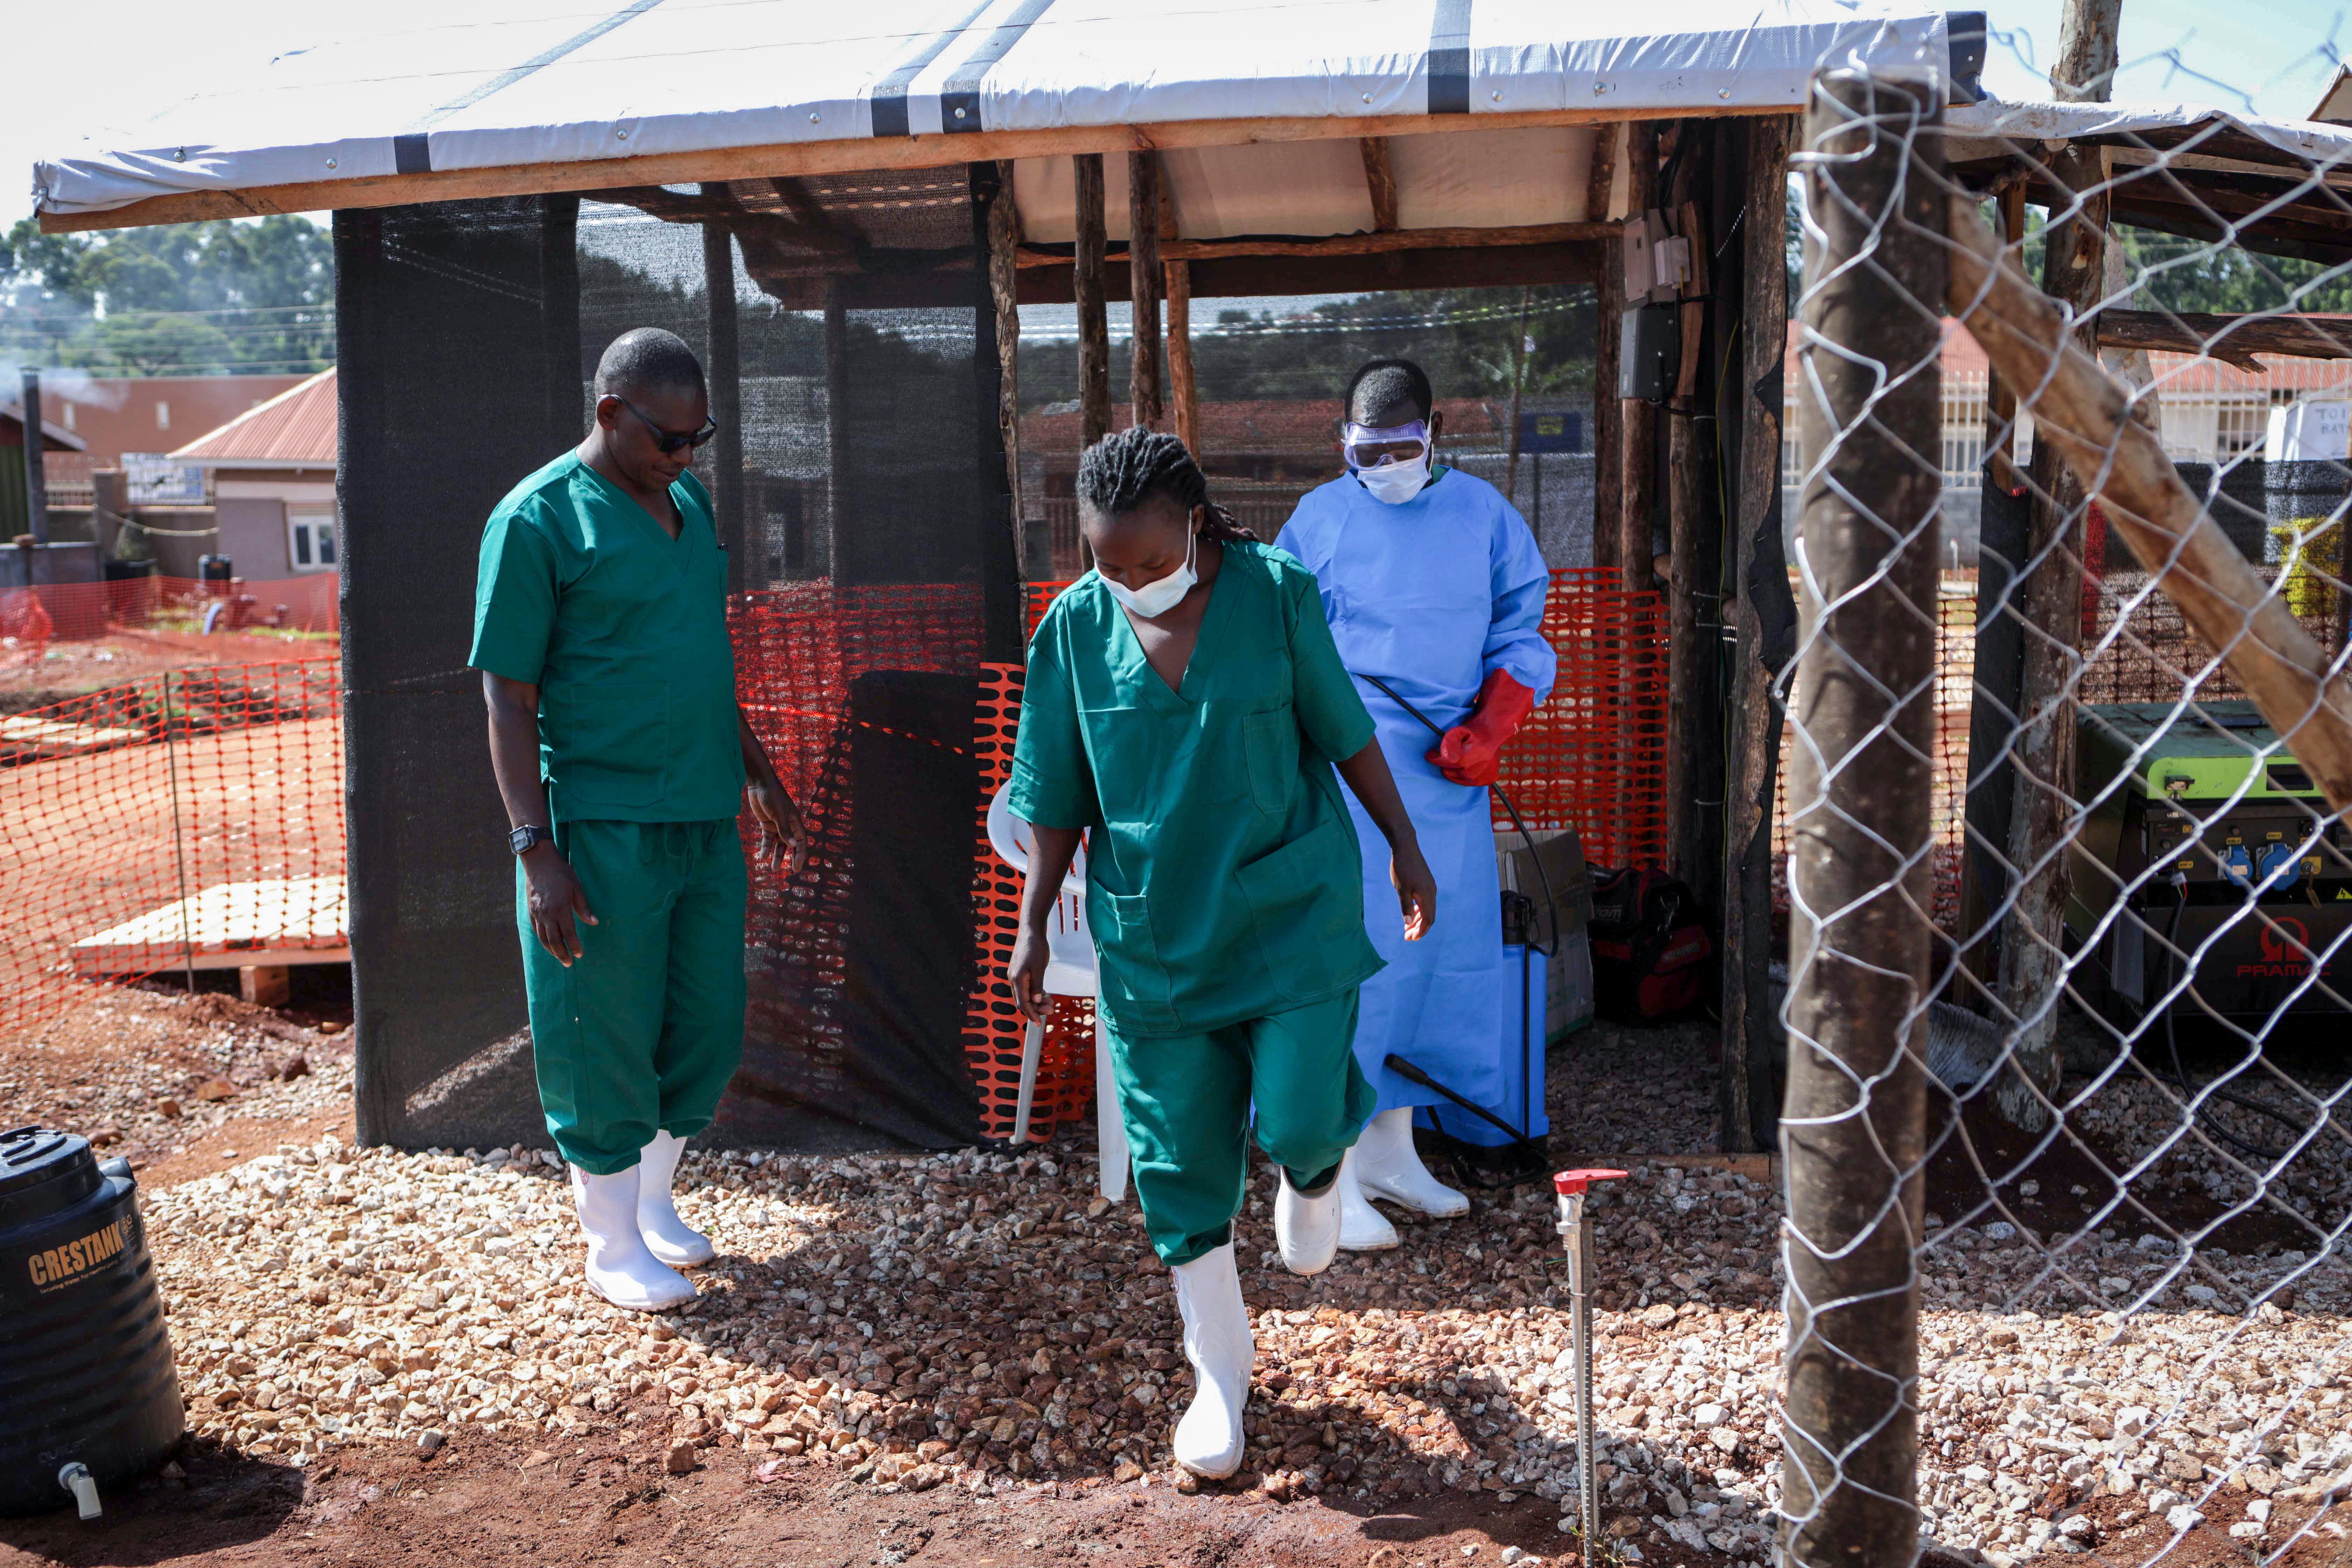 Un asistente médico desinfecta las botas de goma de un funcionario médico antes de abandonar la sección de aislamiento del ébola del Hospital Regional Especializado de Mubende, en Mubende, Uganda